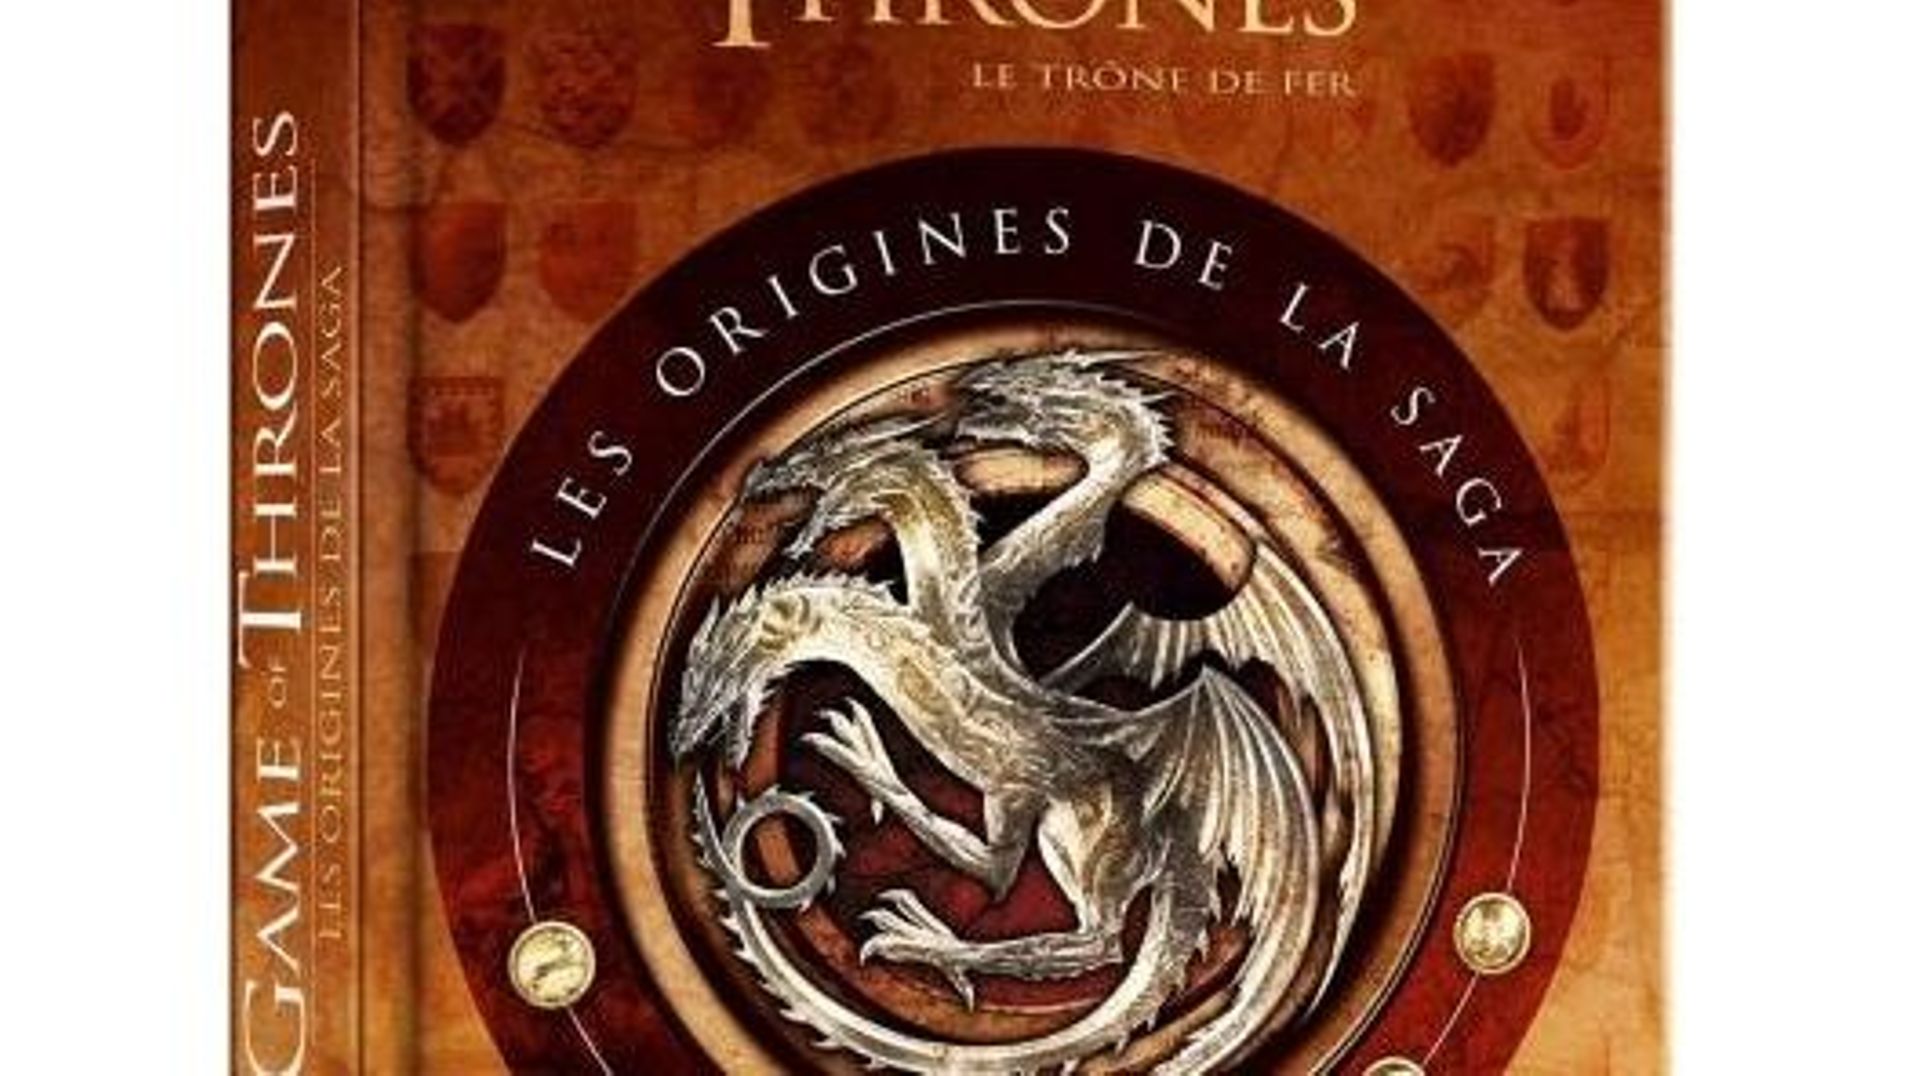 Dans "Game of Thrones, les origines de la saga", sont notamment racontées en détail toute l'histoire des 7 royaumes, toutes les batailles épiques et les perfides trahisons